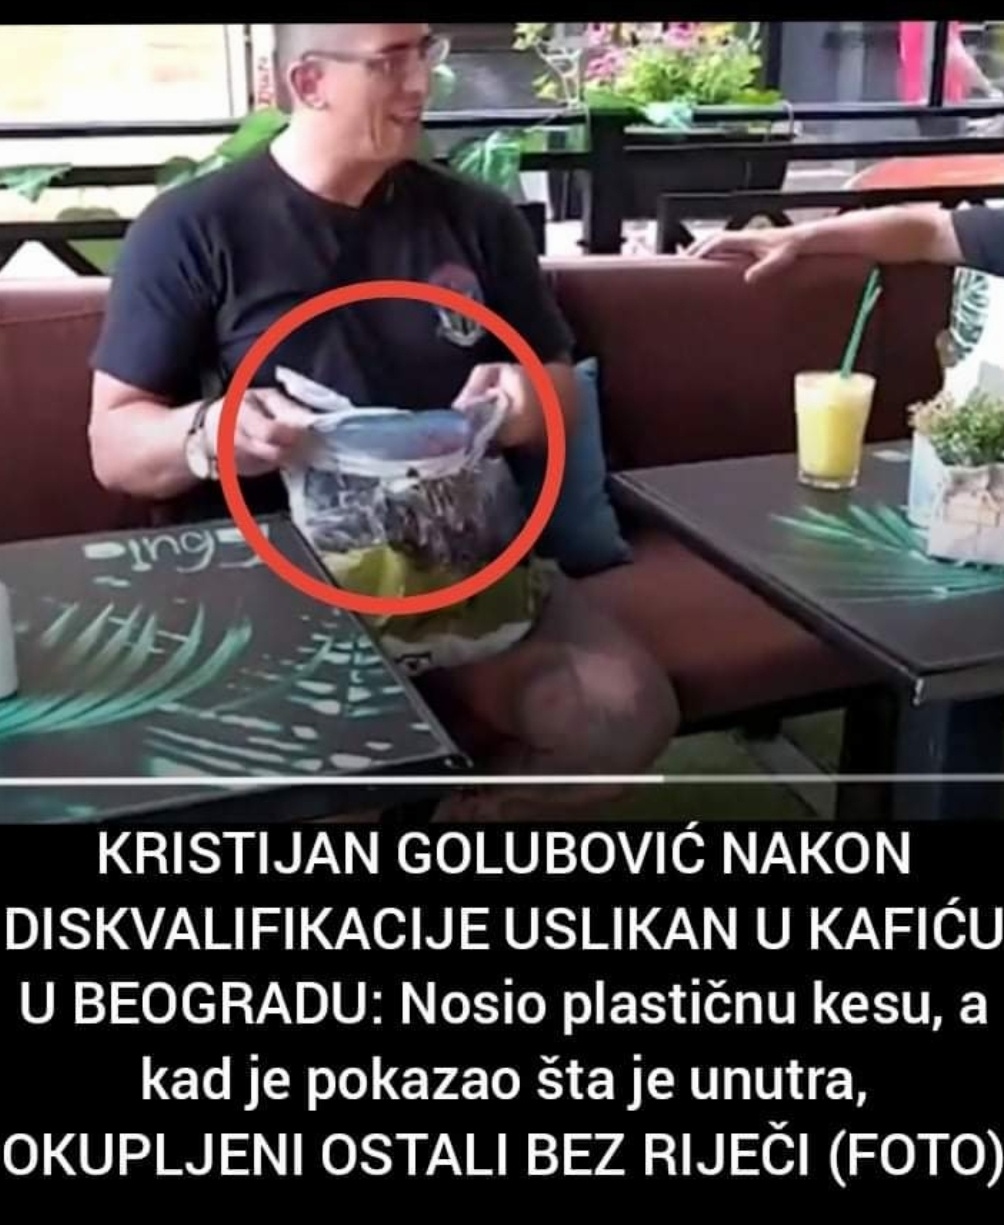 Pogledajte šta je Kristijan Golubović nosio u plastičnoj kesi nakon diskvalifikacija